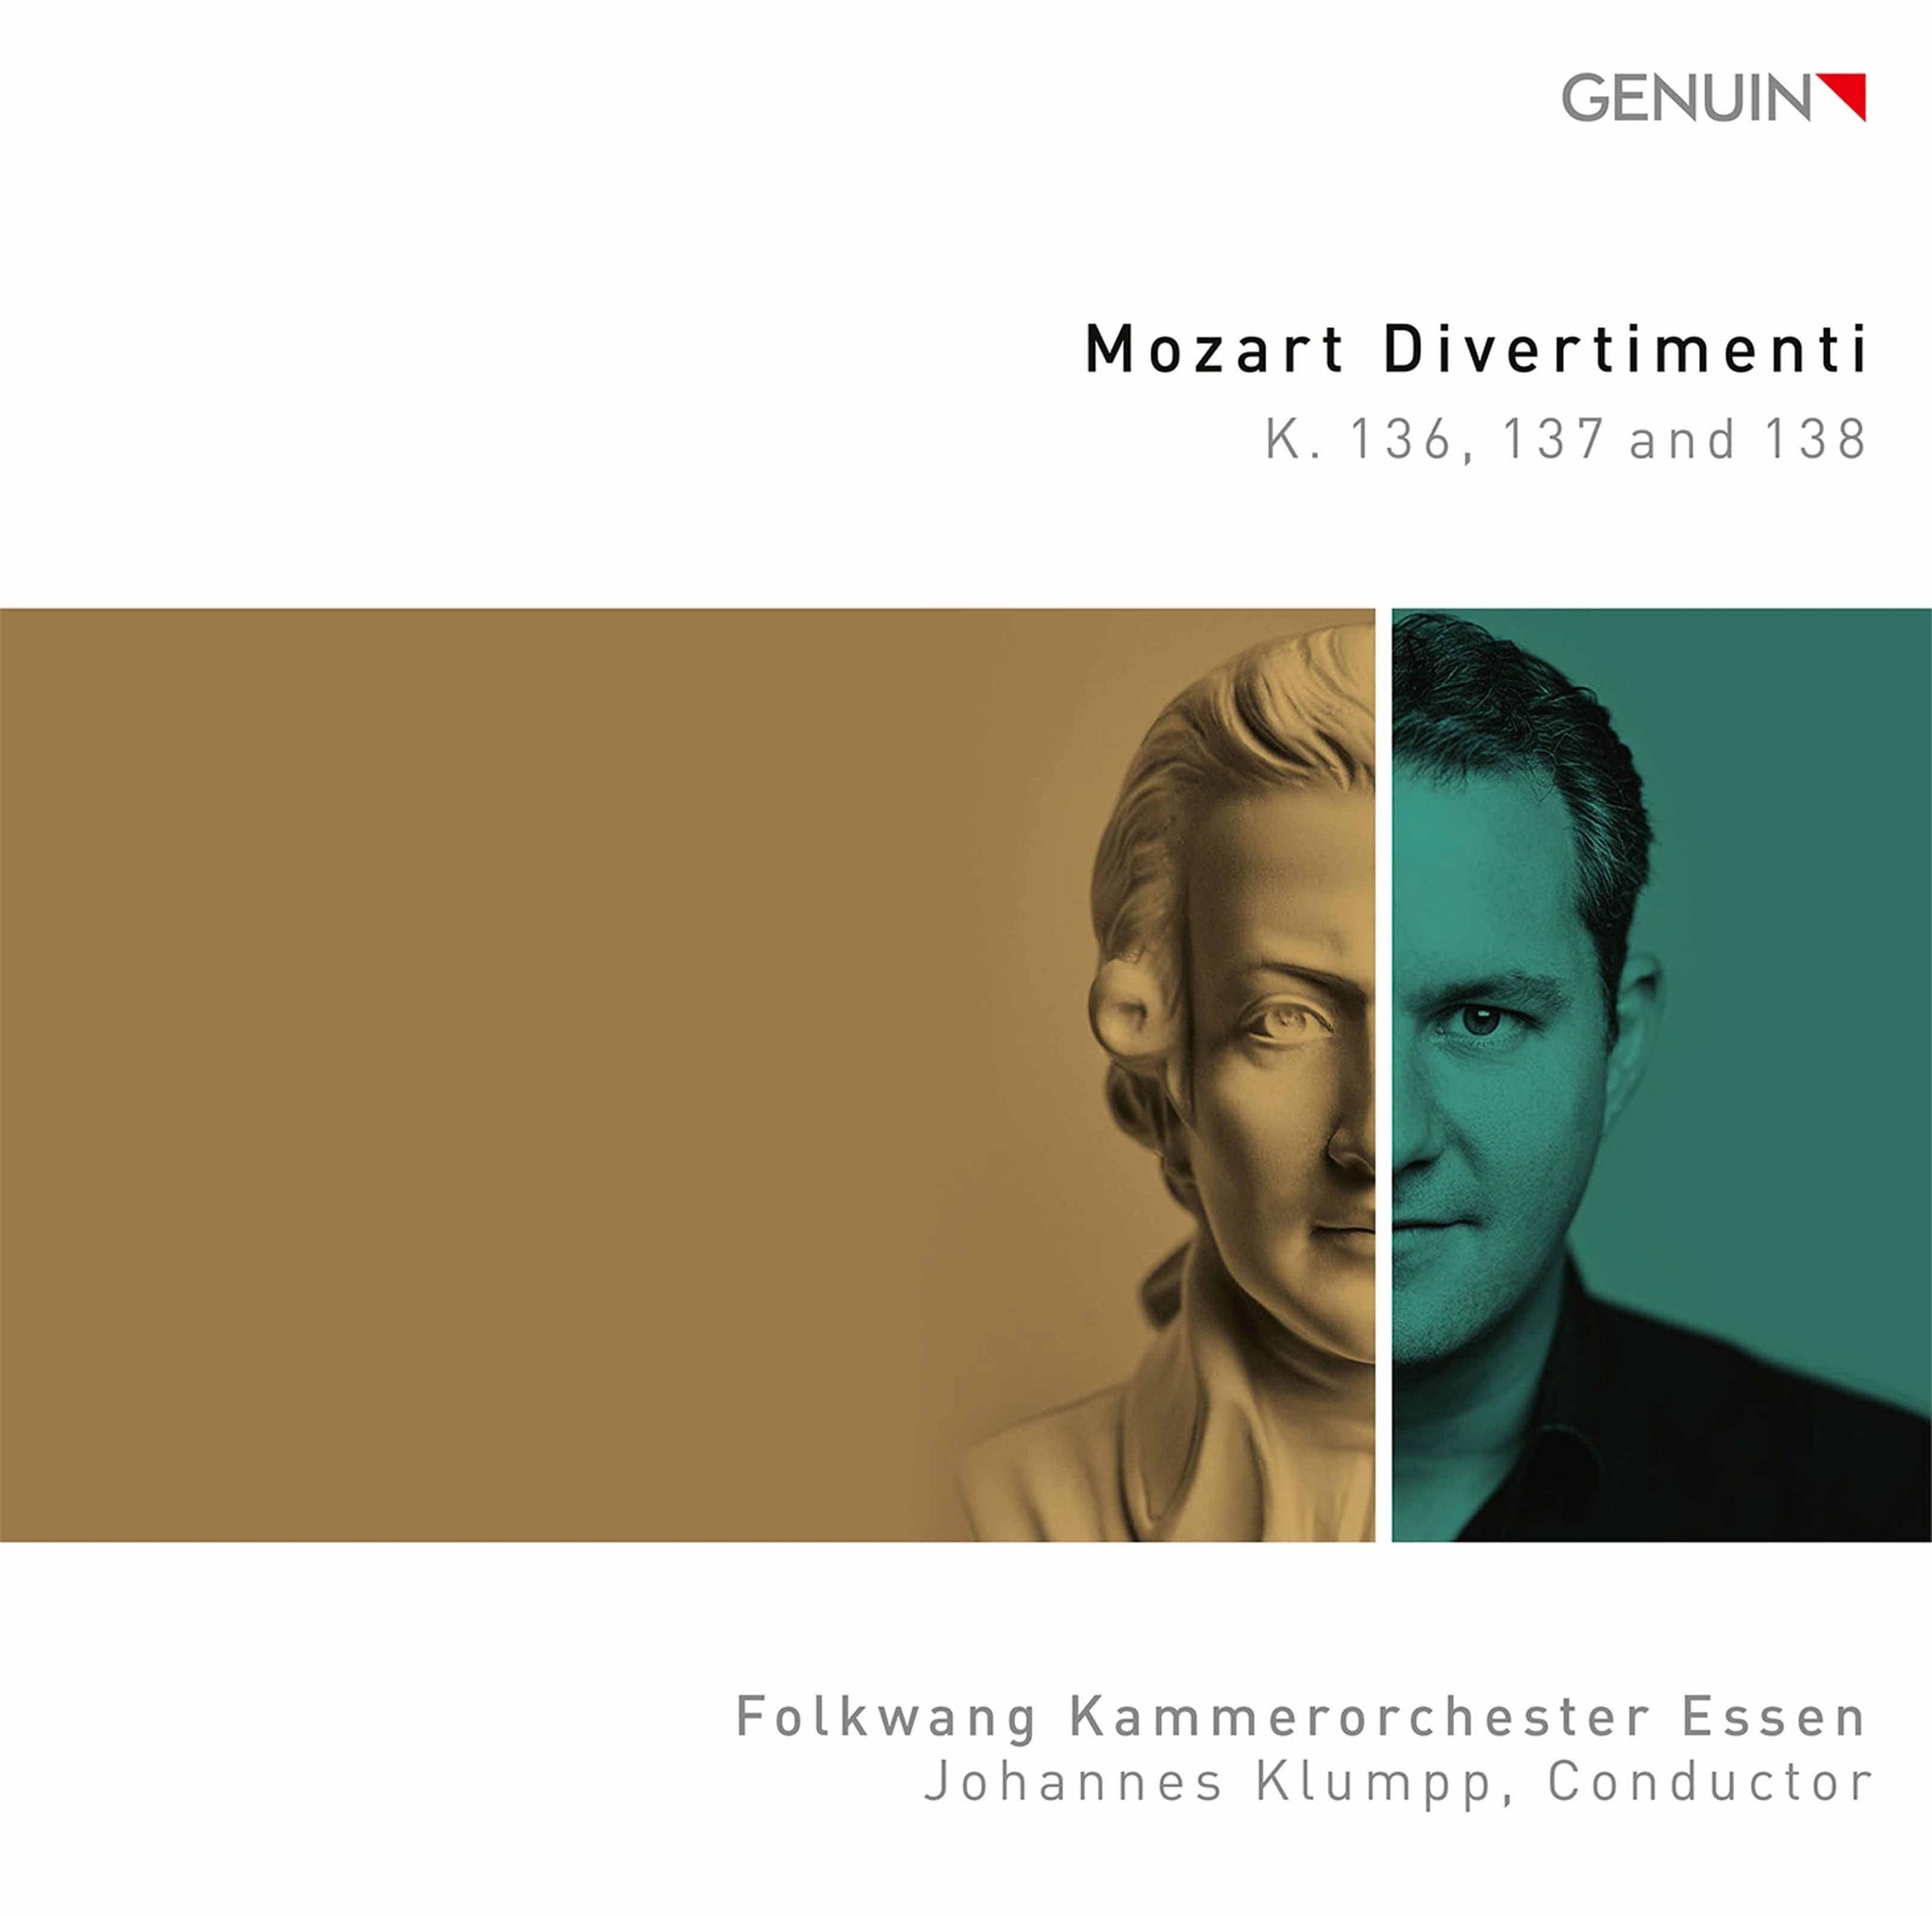 Mozart Divertimento / Klumpp, Folkwang Kammerorchester Essen - ArkivMusic